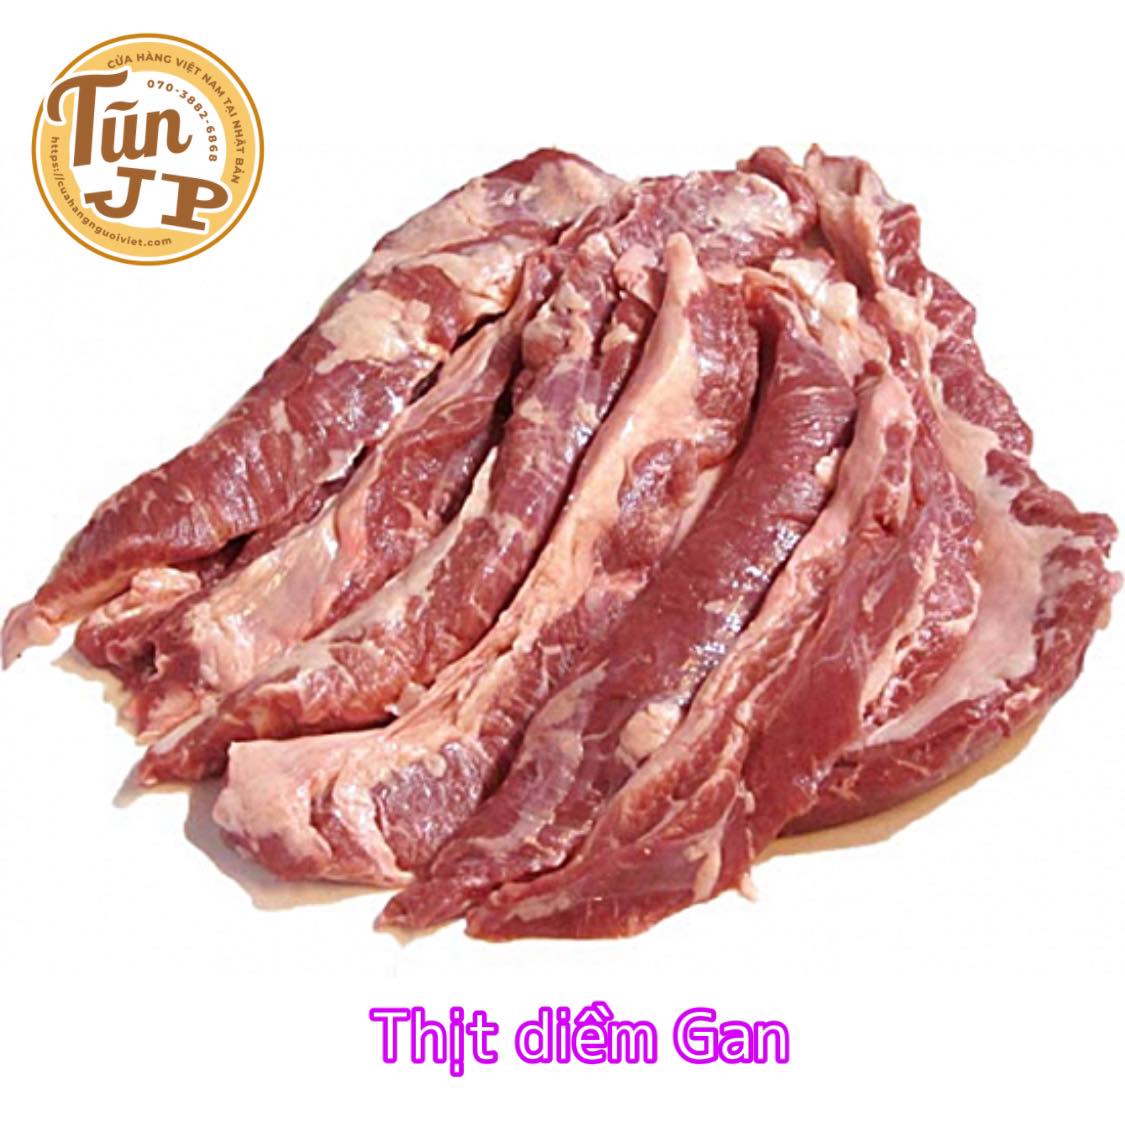 Thịt diềm gan,vách ngăn heo 1kg – Cửa Hàng Người Việt Tại Nhật Bản